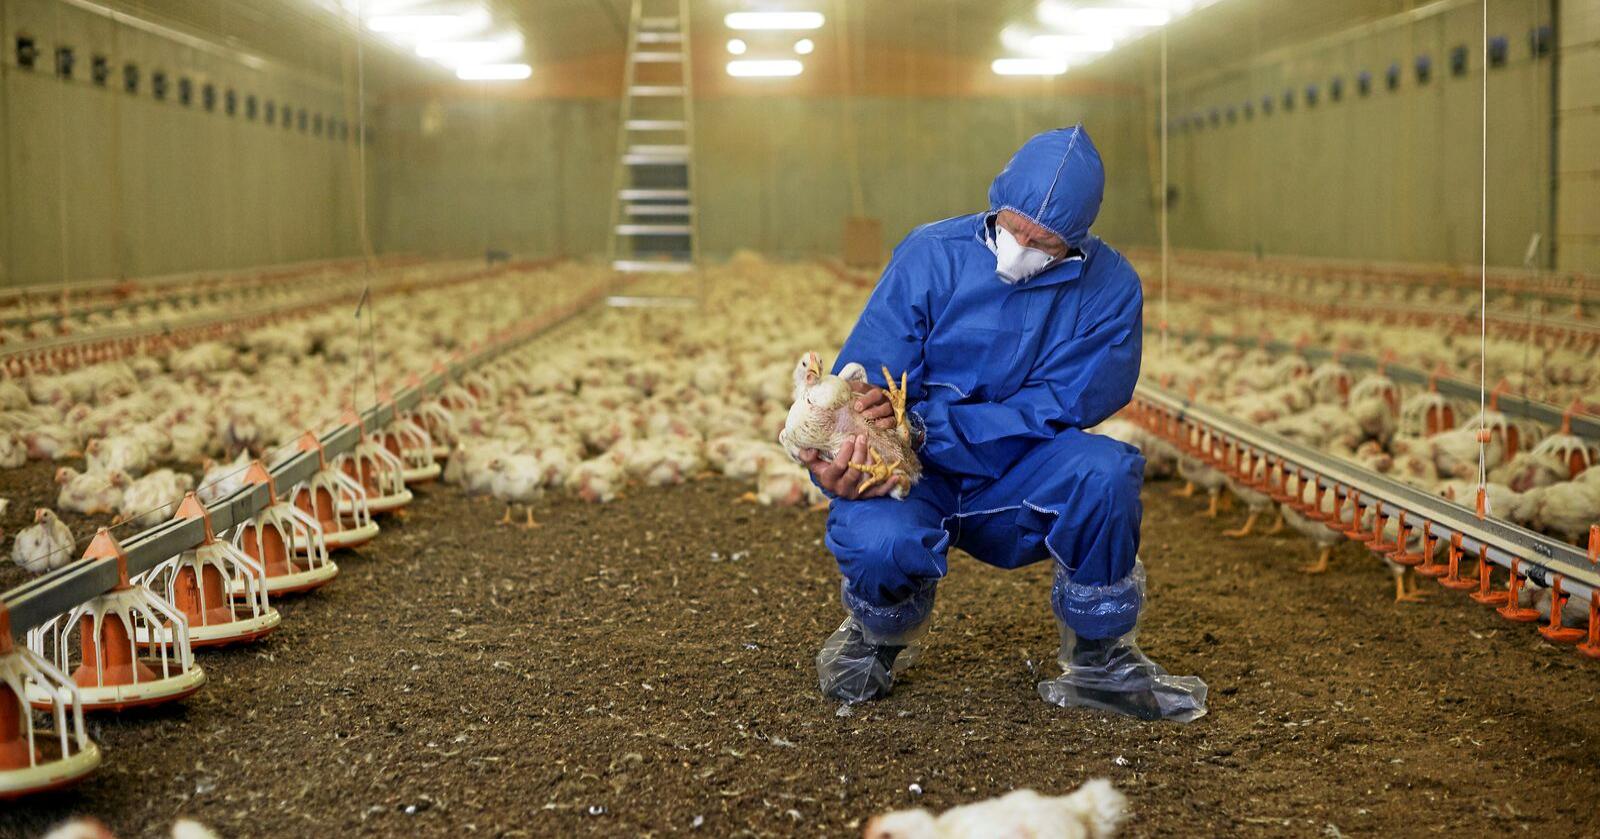 En av Mattilsynets inspektører på arbeid under kyllingkontroll. Illustrasjonsfoto: Mattilsynet/ flickr.com